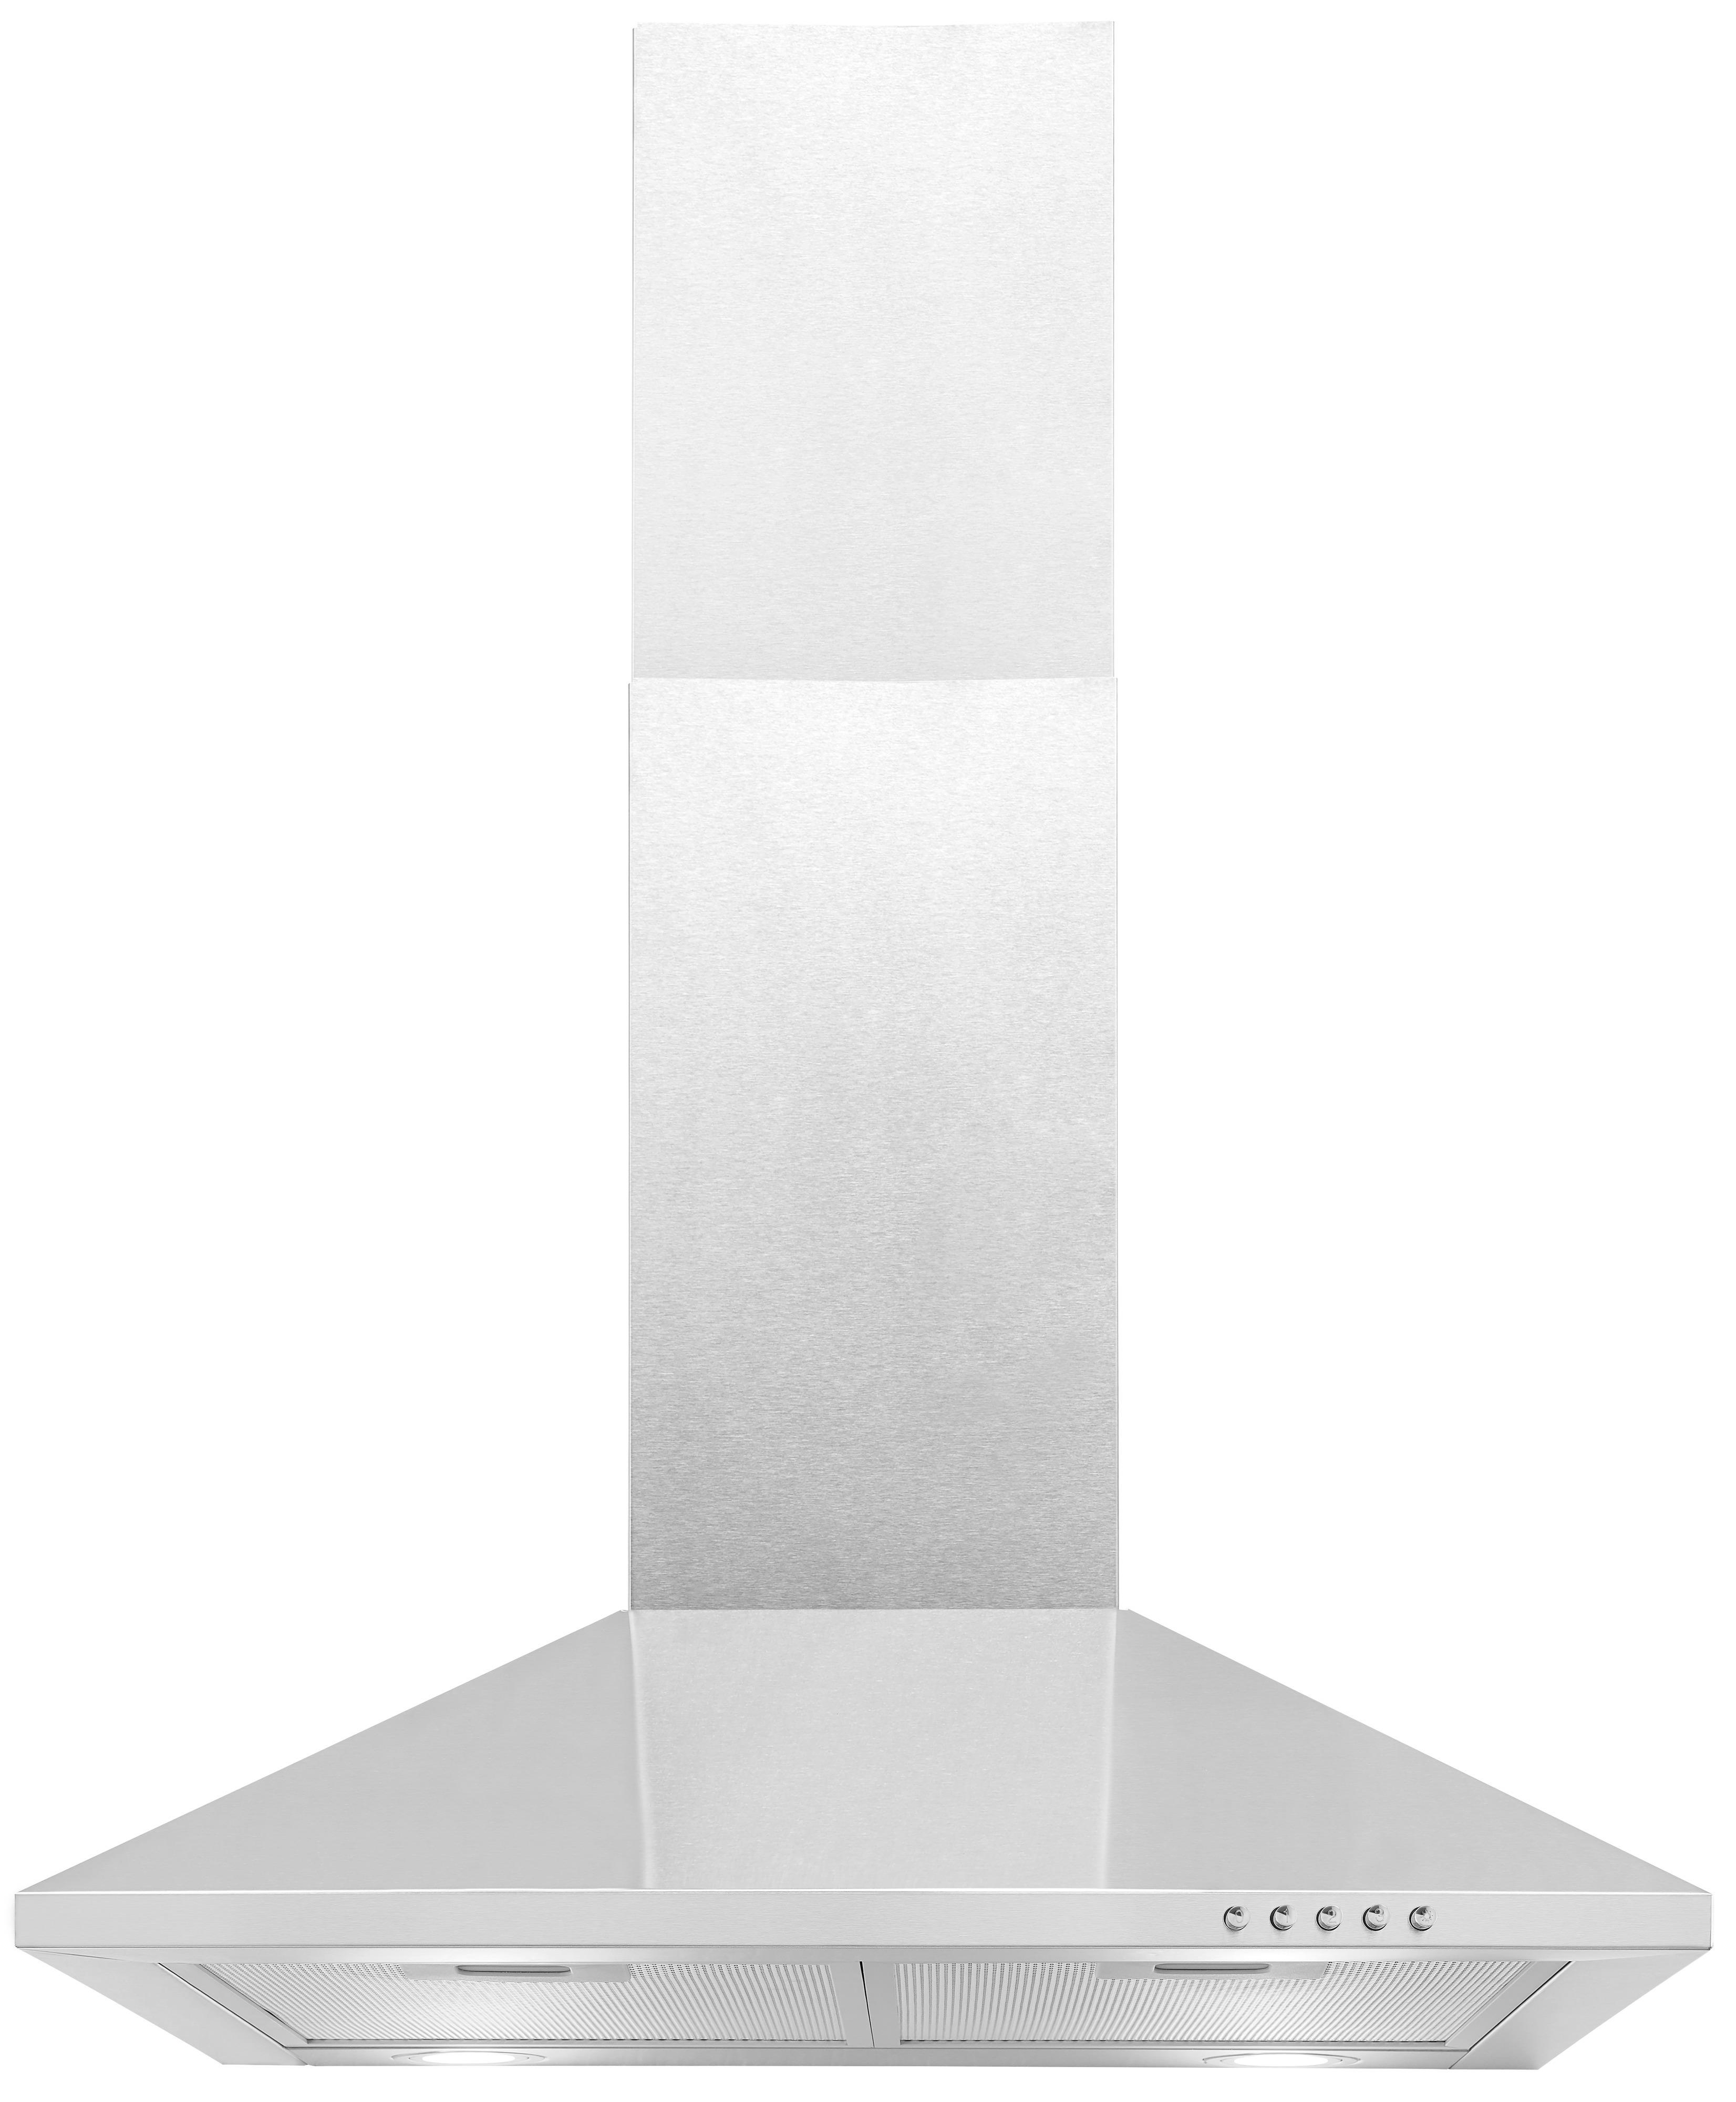 EXQUISIT KH 60-8.2, Dunstabzugshaube (595 480 mm tief) mm breit